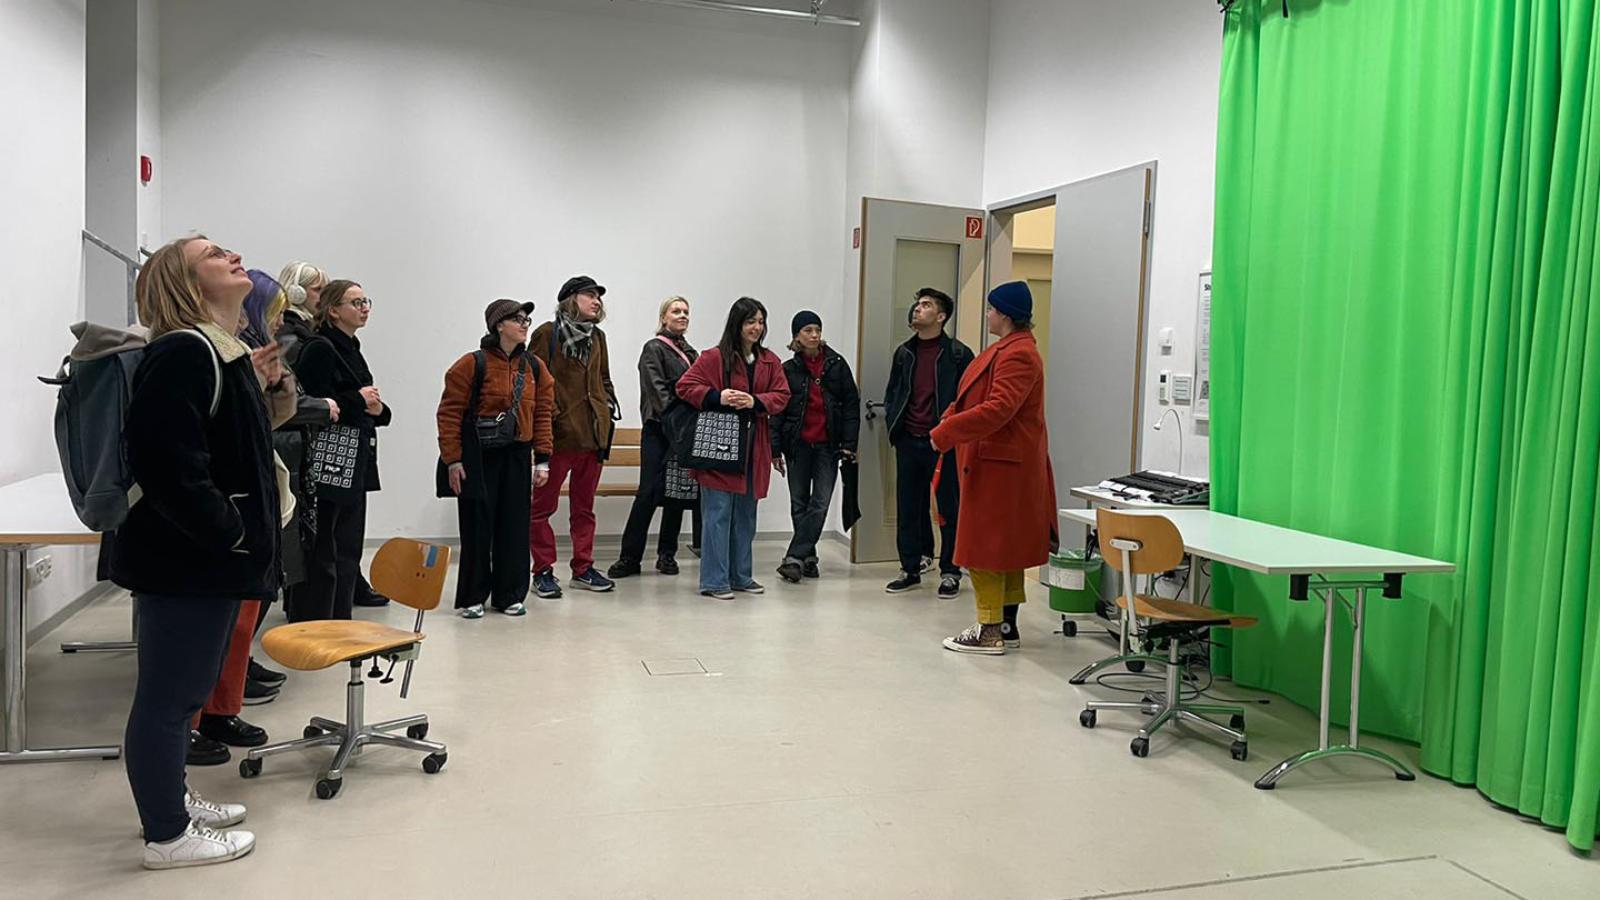 Eine Gruppe internationaler Studierende steht am linken Ran eines Raumes. An der rechten Wand hängt ein knall-grüner Vorhang.